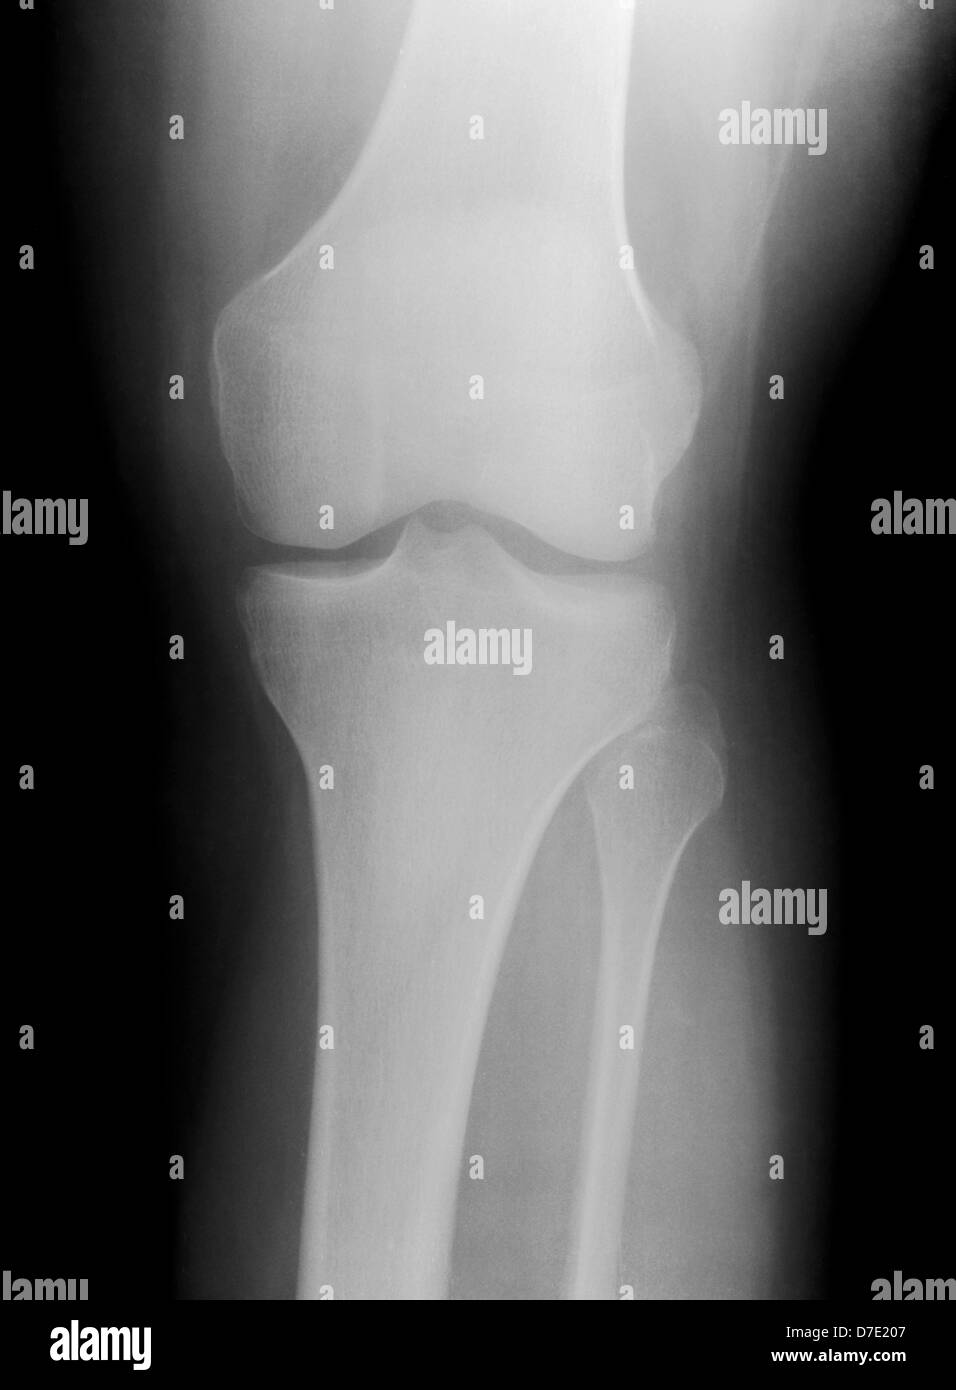 Radiographie d'un genou humain Banque D'Images